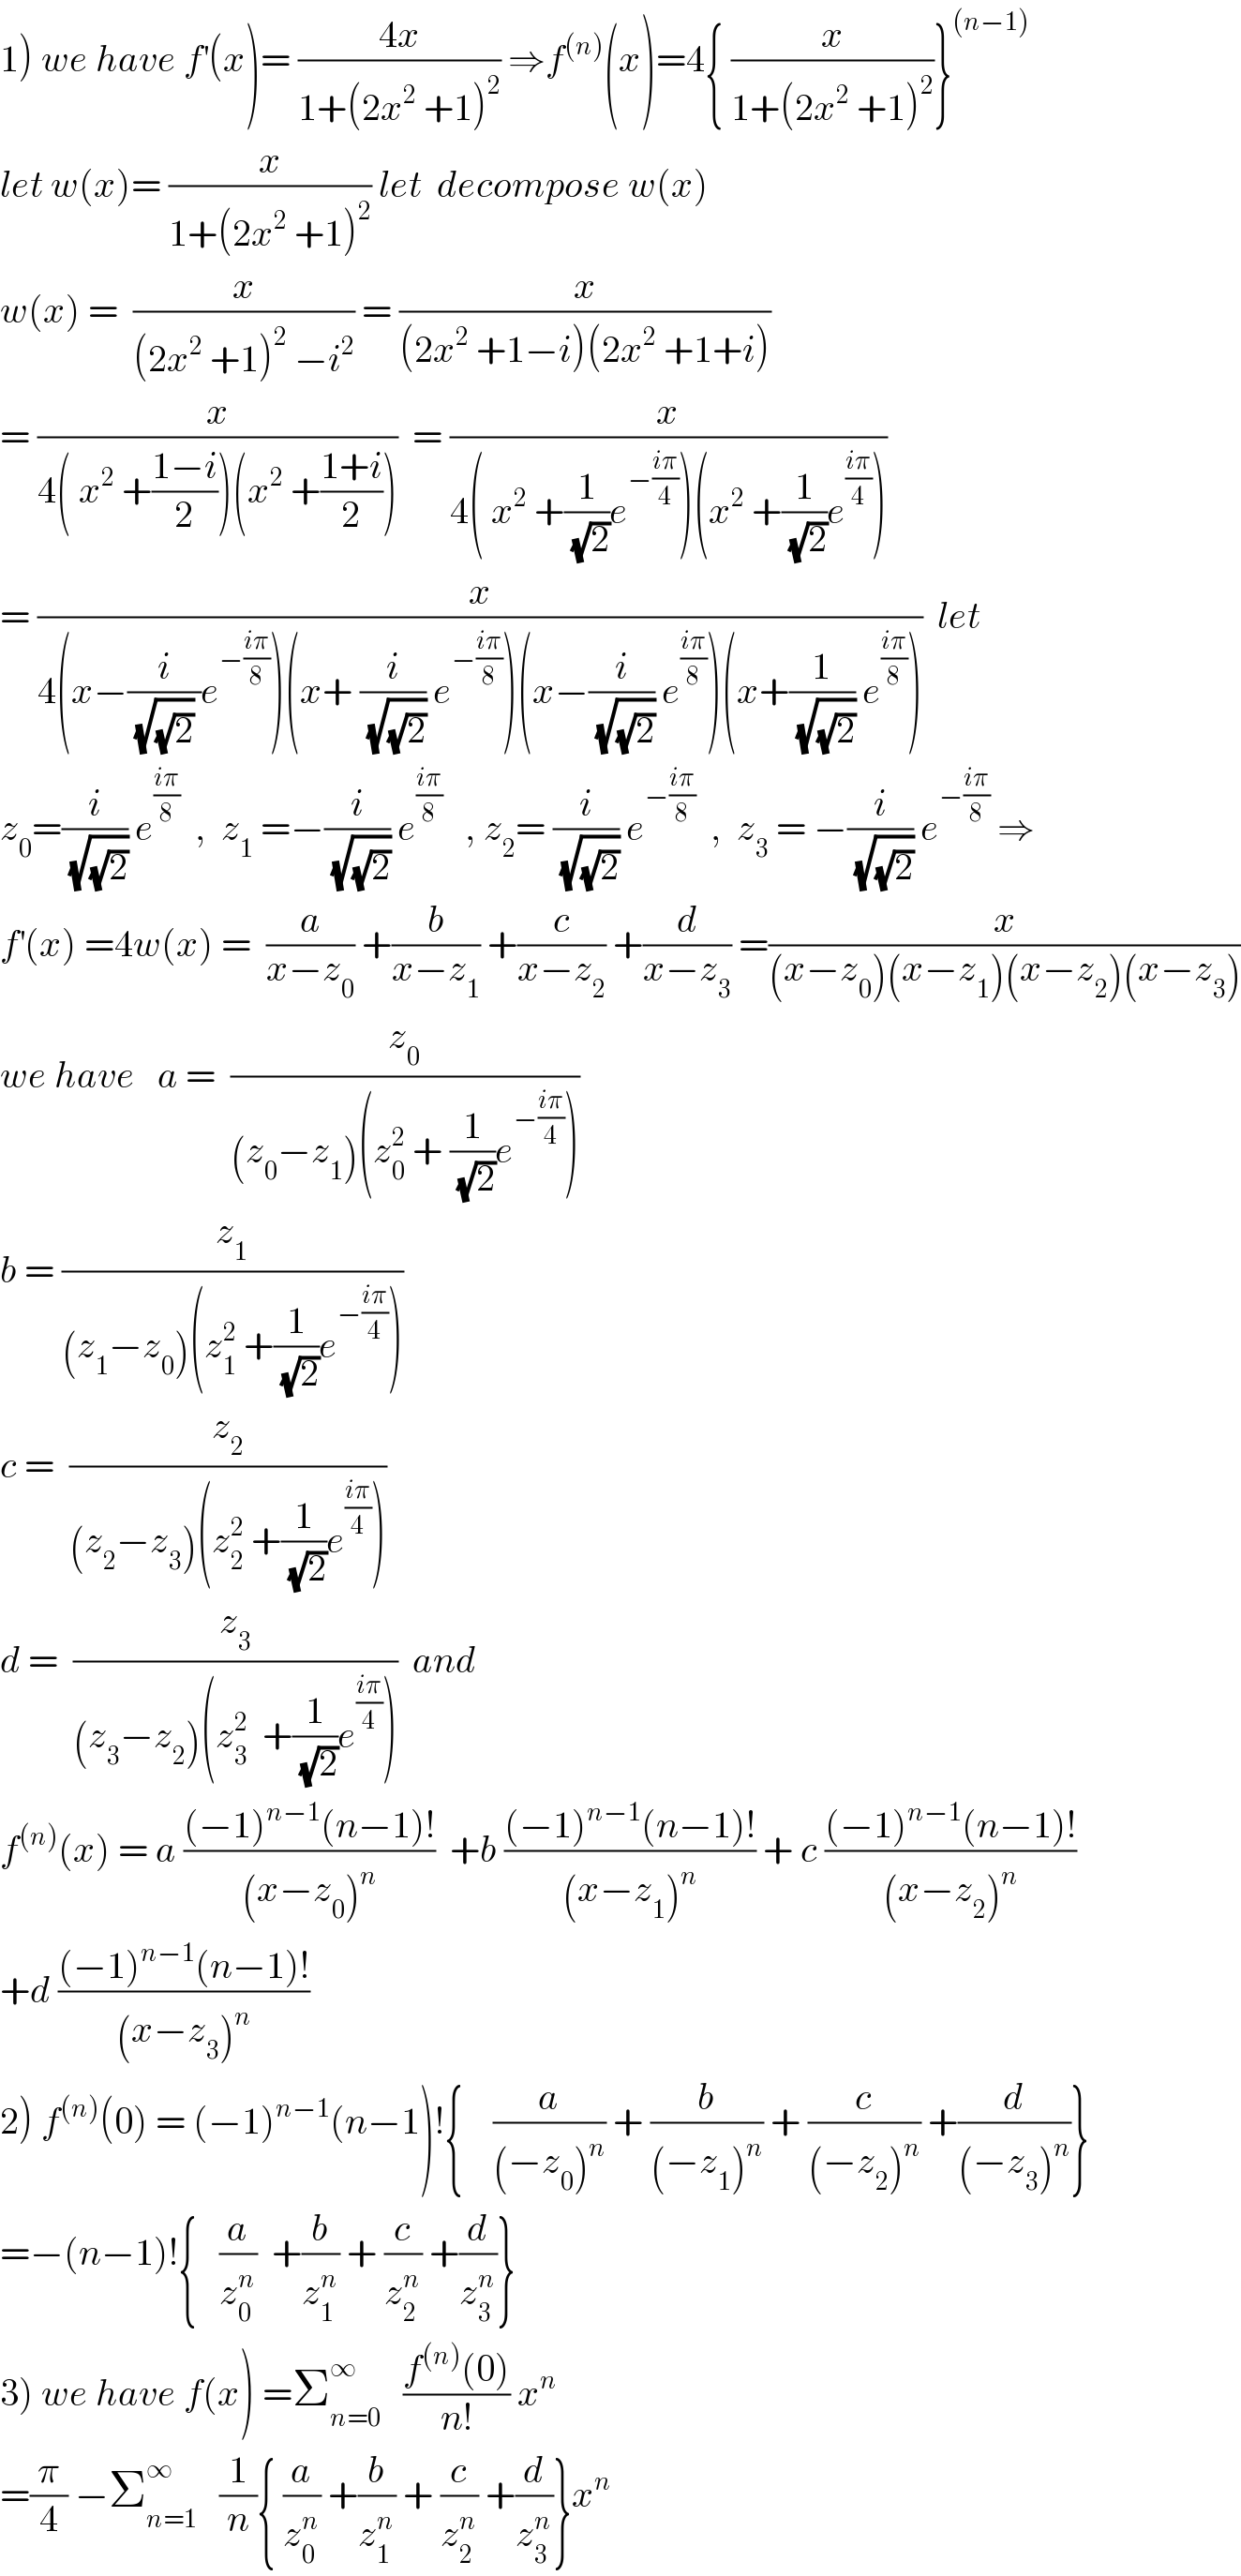 1) we have f^′ (x)= ((4x)/(1+(2x^2  +1)^2 )) ⇒f^((n)) (x)=4{ (x/(1+(2x^2  +1)^2 ))}^((n−1))   let w(x)= (x/(1+(2x^2  +1)^2 )) let  decompose w(x)  w(x) =  (x/((2x^2  +1)^2  −i^2 )) = (x/((2x^2  +1−i)(2x^2  +1+i)))  = (x/(4( x^2  +((1−i)/2))(x^2  +((1+i)/2))))  = (x/(4( x^2  +(1/(√2))e^(−((iπ)/4)) )(x^2  +(1/(√2))e^((iπ)/4) )))  = (x/(4(x−(i/((√(√2)) ))e^(−((iπ)/8)) )(x+ (i/(√(√2))) e^(−((iπ)/8)) )(x−(i/(√(√2))) e^((iπ)/8) )(x+(1/(√(√2))) e^((iπ)/8) )))  let  z_0 =(i/(√(√2))) e^((iπ)/8)   ,  z_1  =−(i/(√(√2))) e^((iπ)/8)    , z_2 = (i/(√(√2))) e^(−((iπ)/8))   ,  z_3  = −(i/(√(√2))) e^(−((iπ)/8))  ⇒  f^′ (x) =4w(x) =  (a/(x−z_0 )) +(b/(x−z_1 )) +(c/(x−z_2 )) +(d/(x−z_3 )) =(x/((x−z_0 )(x−z_1 )(x−z_2 )(x−z_3 )))  we have   a =  (z_0 /((z_0 −z_1 )(z_0 ^2  + (1/(√2))e^(−((iπ)/4)) )))  b = (z_1 /((z_1 −z_0 )(z_1 ^2  +(1/(√2))e^(−((iπ)/4)) )))  c =  (z_2 /((z_2 −z_3 )(z_2 ^2  +(1/(√2))e^((iπ)/4) )))  d =  (z_3 /((z_3 −z_2 )(z_3 ^2   +(1/(√2))e^((iπ)/4) )))  and    f^((n)) (x) = a (((−1)^(n−1) (n−1)!)/((x−z_0 )^n ))  +b (((−1)^(n−1) (n−1)!)/((x−z_1 )^n )) + c (((−1)^(n−1) (n−1)!)/((x−z_2 )^n ))  +d (((−1)^(n−1) (n−1)!)/((x−z_3 )^n ))  2) f^((n)) (0) = (−1)^(n−1) (n−1)!{    (a/((−z_0 )^n )) + (b/((−z_1 )^n )) + (c/((−z_2 )^n )) +(d/((−z_3 )^n ))}  =−(n−1)!{   (a/z_0 ^n )  +(b/z_1 ^n ) + (c/z_2 ^n ) +(d/z_3 ^n )}  3) we have f(x) =Σ_(n=0) ^∞    ((f^((n)) (0))/(n!)) x^n   =(π/4) −Σ_(n=1) ^∞    (1/n){ (a/z_0 ^n ) +(b/z_1 ^n ) + (c/z_2 ^n ) +(d/z_3 ^n )}x^n   